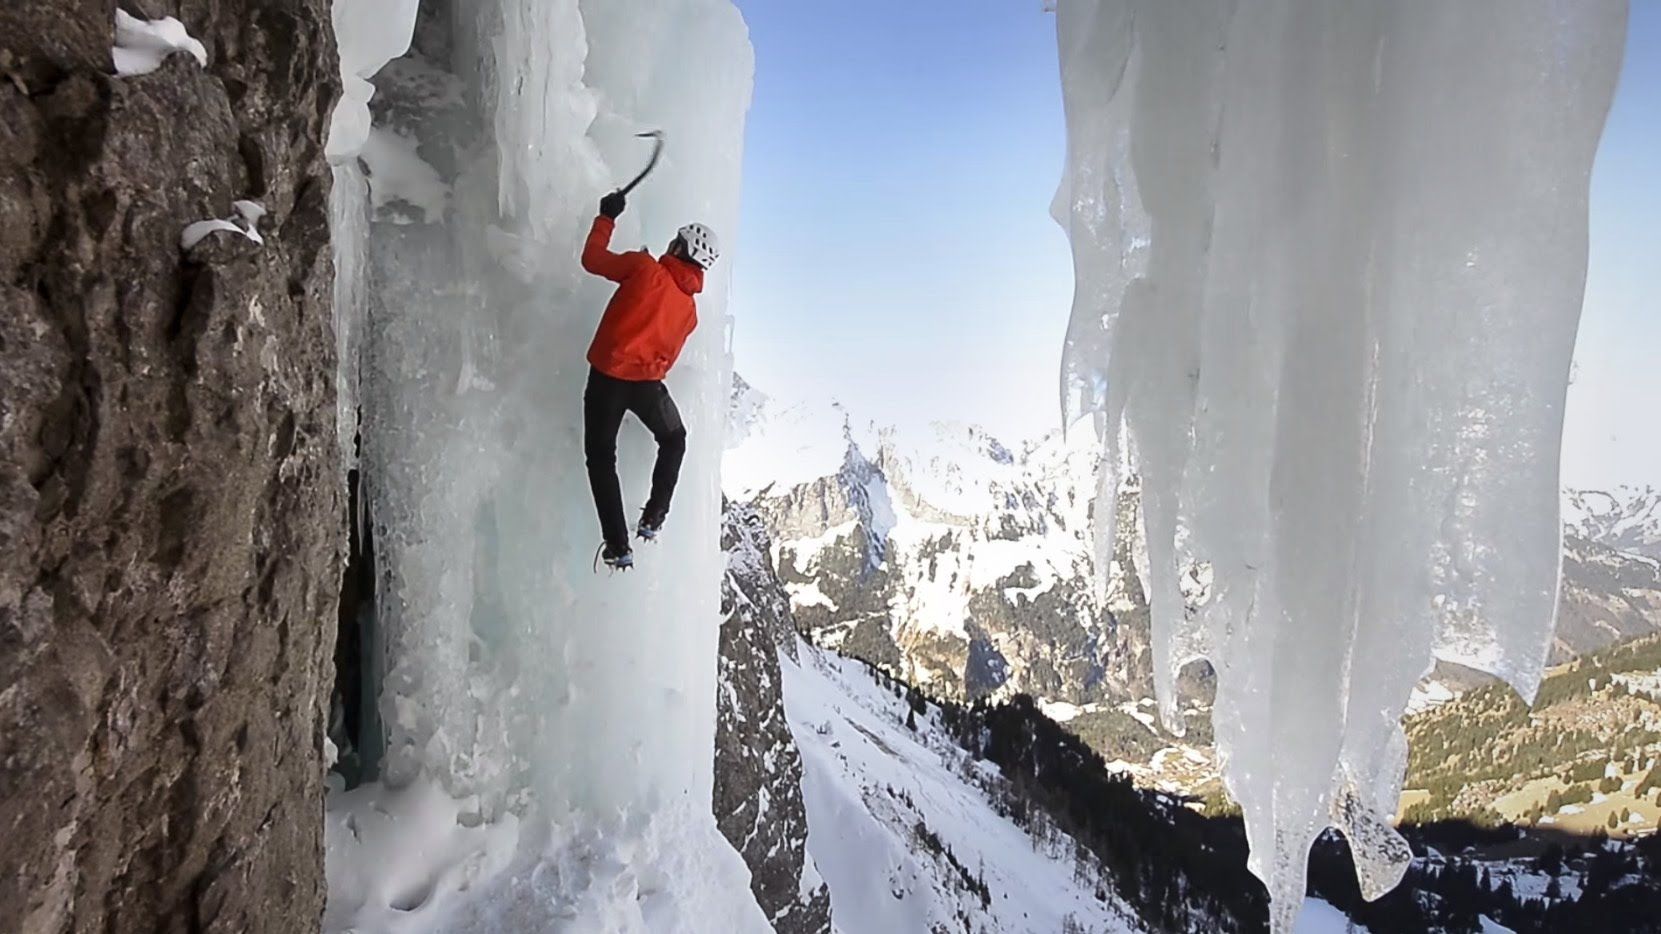 Канадский альпинист Уилл Гадд взобрался на замерзший водопад Хелмкен